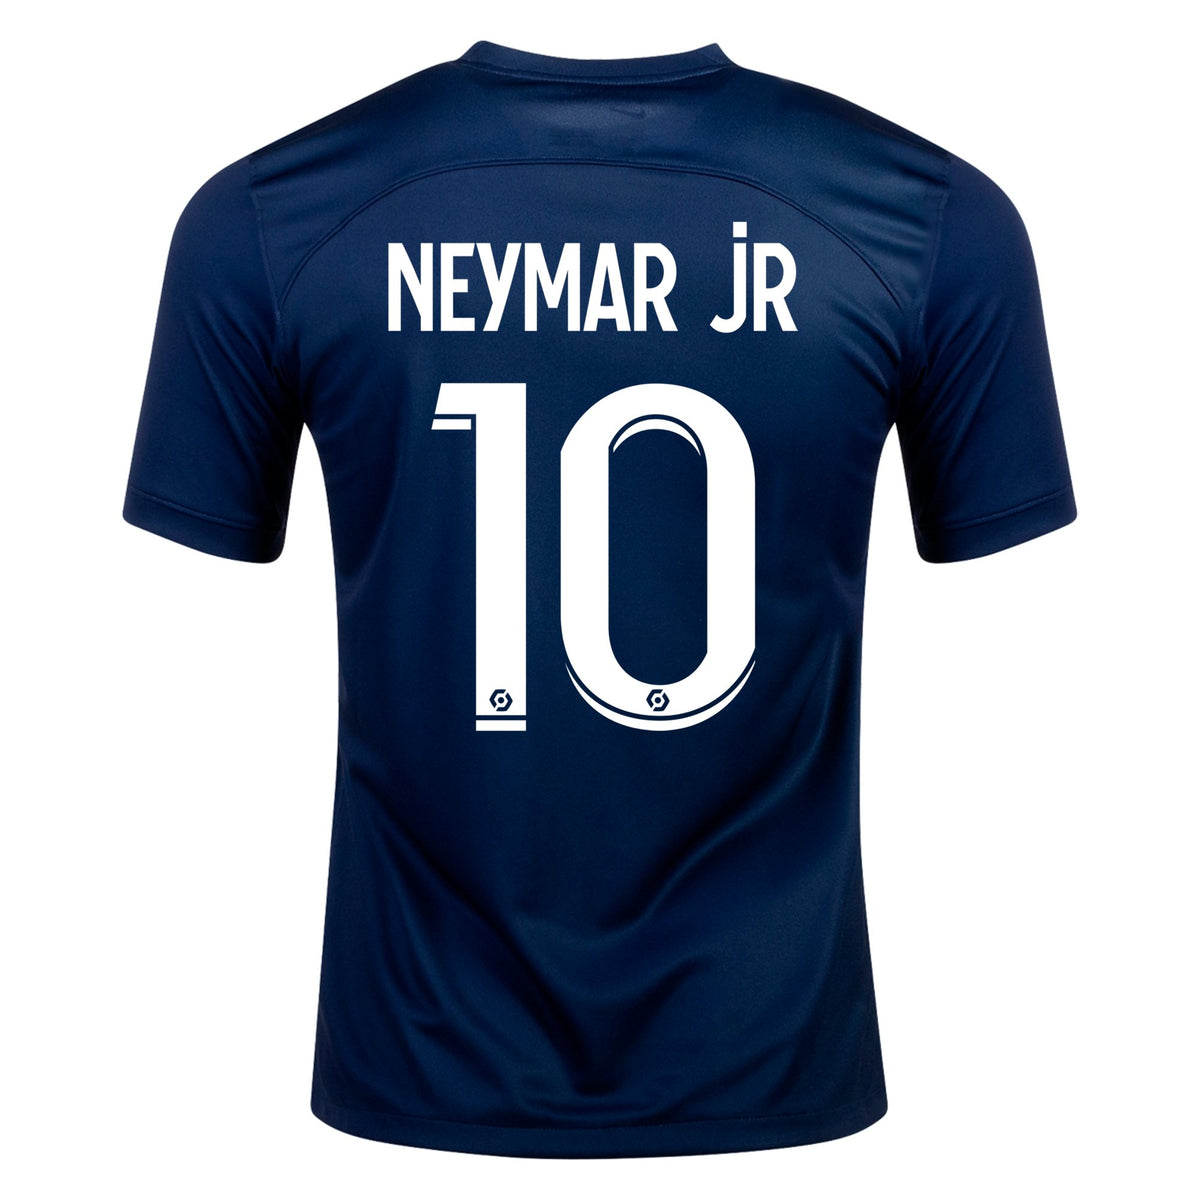 🇫🇷PSG Paris Saint-Germain 22/23 Neymar jr #10 Home Jersey authentic player